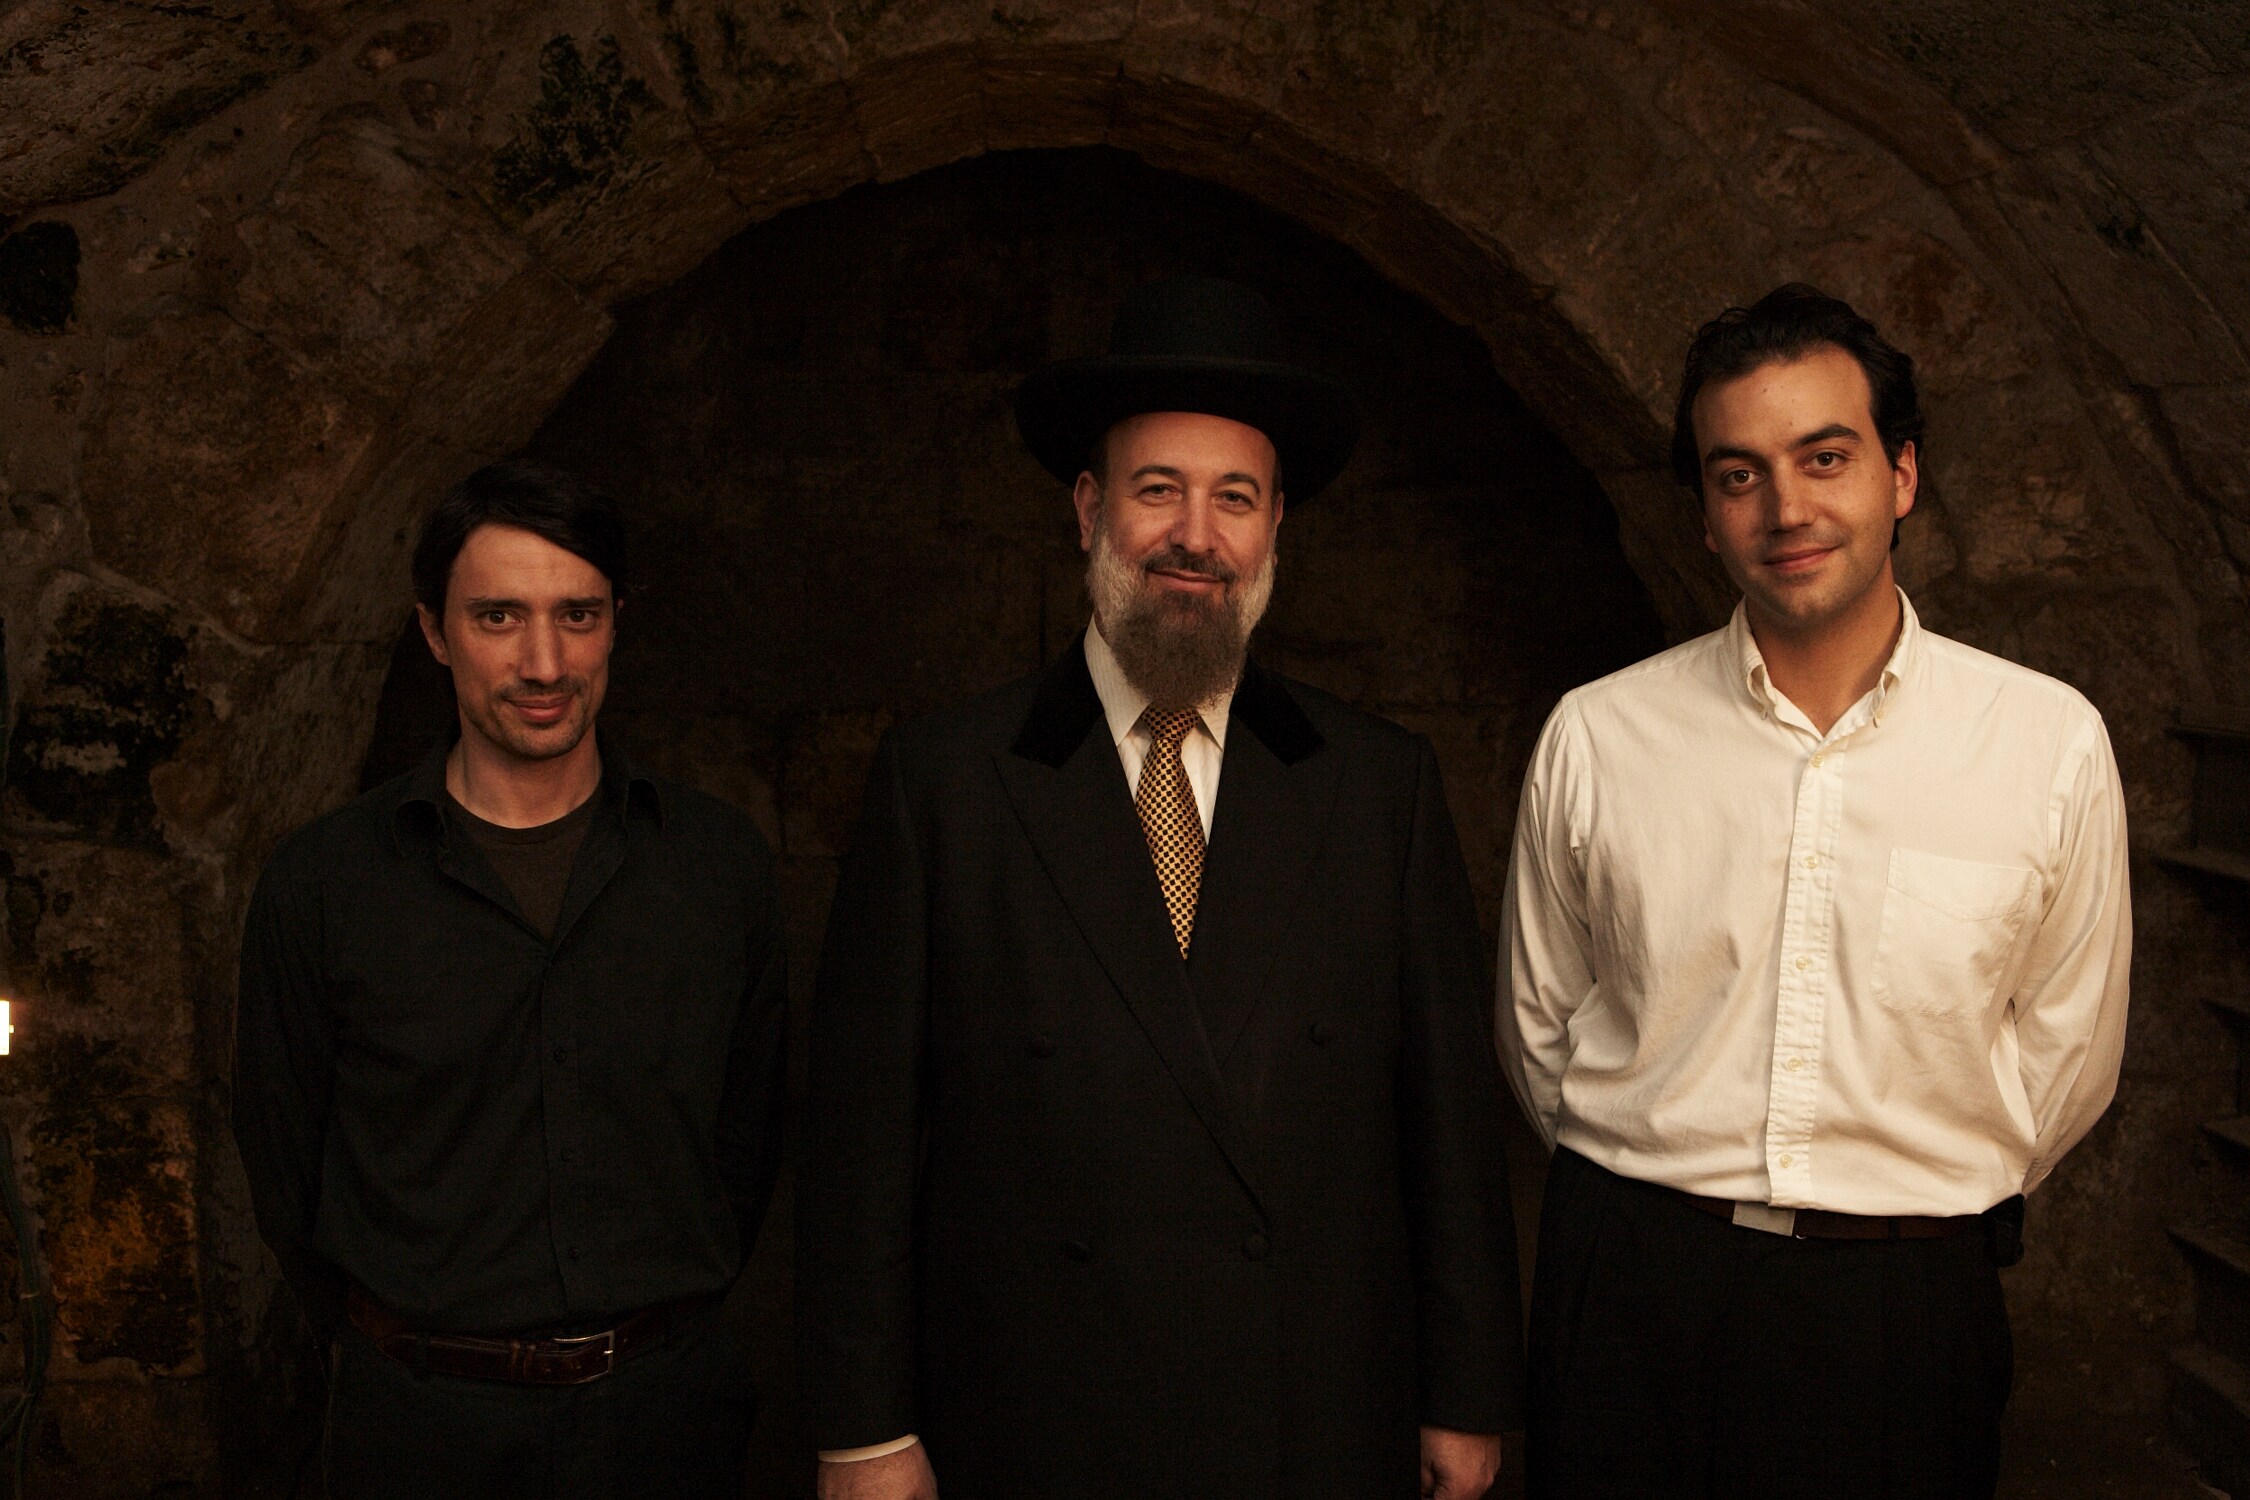 Jules Naudet, Gedeon Naudet and Yona Metzger, Ashkenazi Chief Rabbi of Israel. Jerusalem, Israel 2007